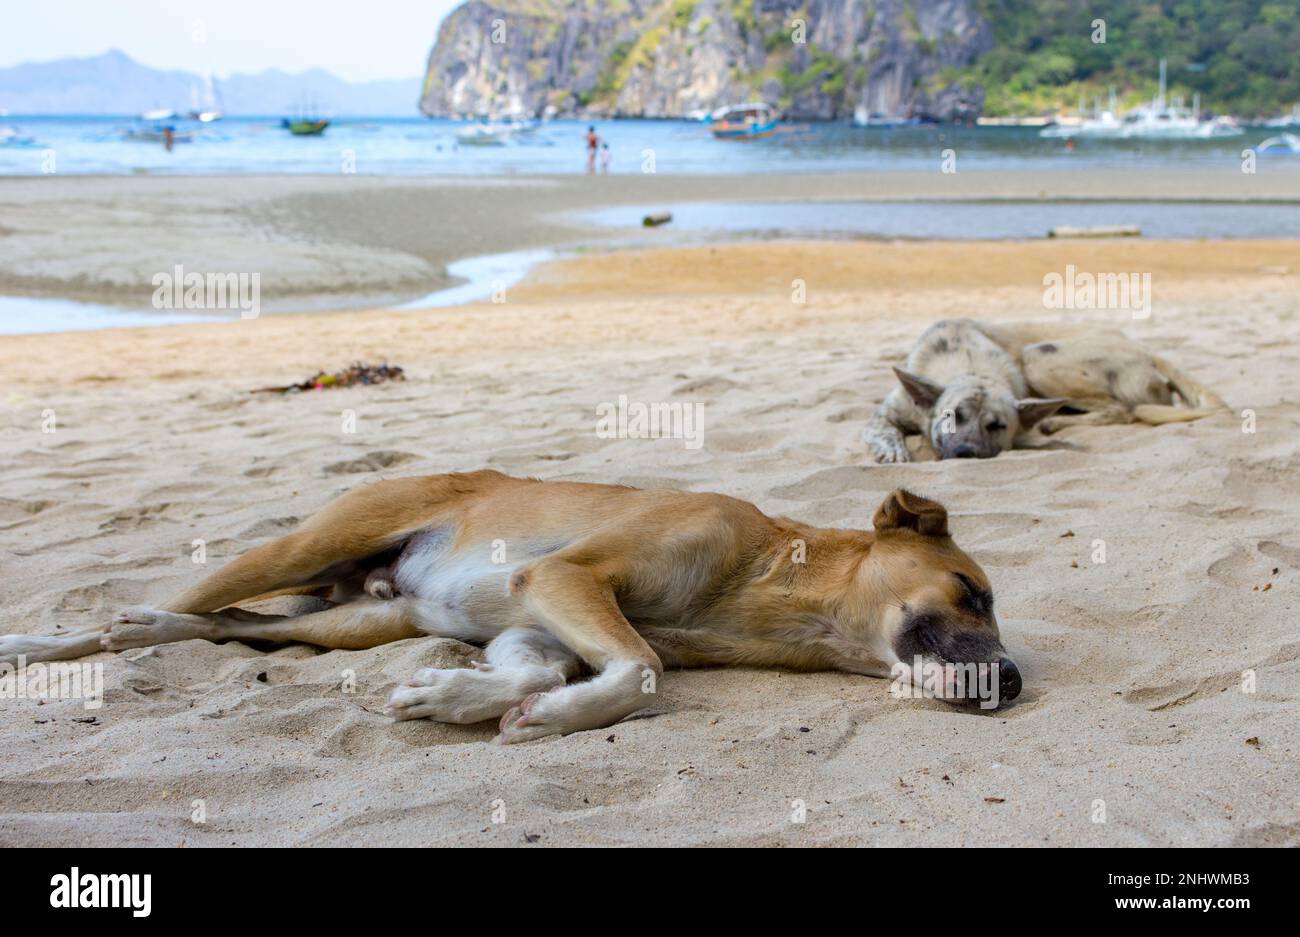 Deux chiens sans abri sur la plage. Chiens dormant sur la côte de mer, Asie. Adorables animaux de compagnie fatigués le jour chaud d'été. Chiens bruns et gris couchés sur du sable. Banque D'Images